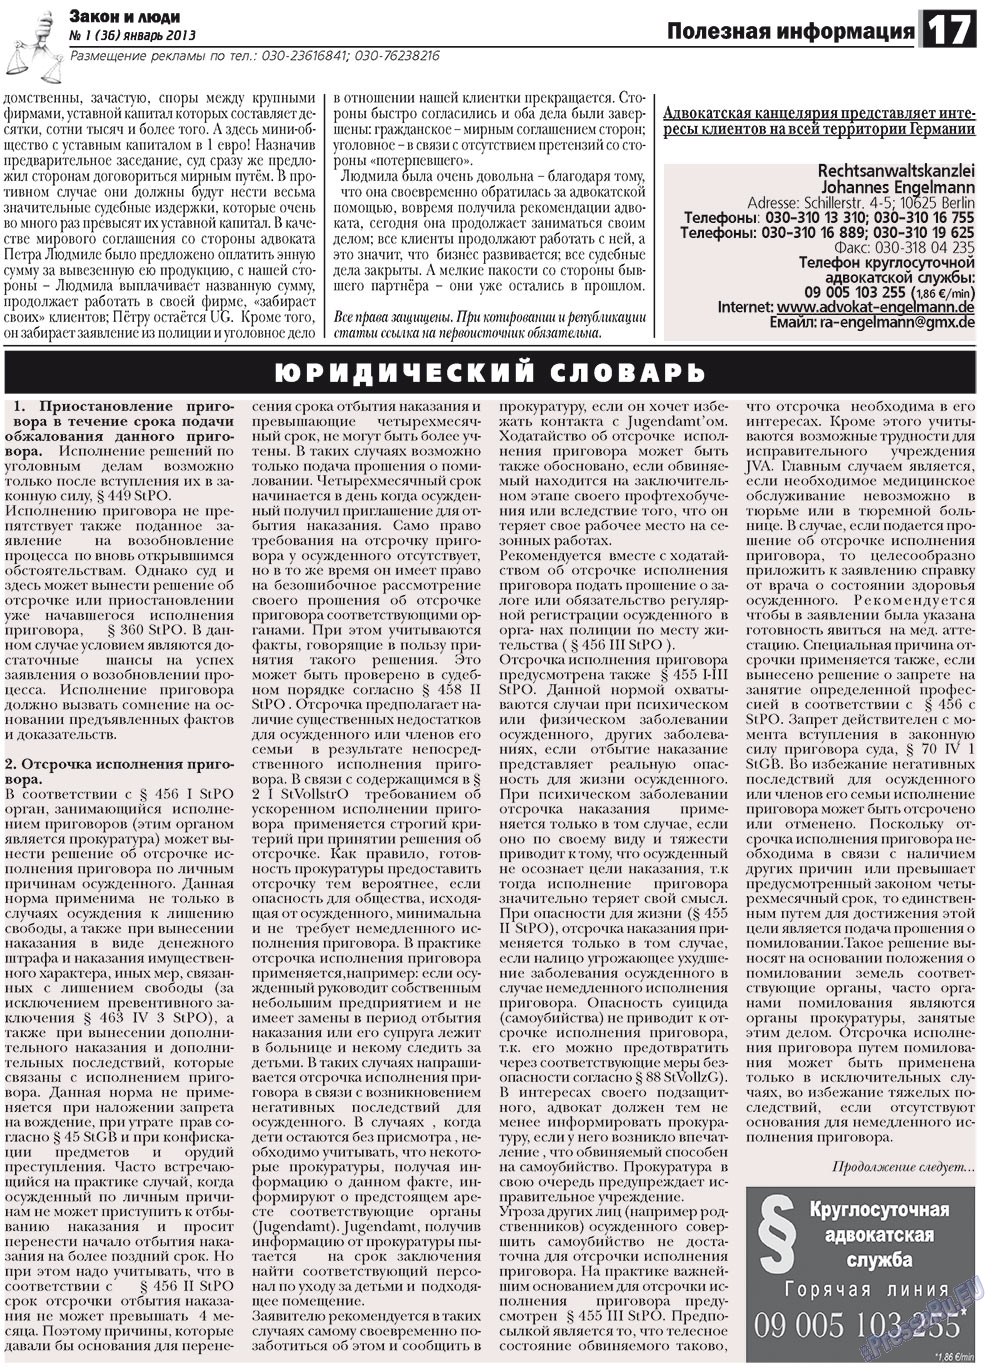 Закон и люди, газета. 2013 №1 стр.17